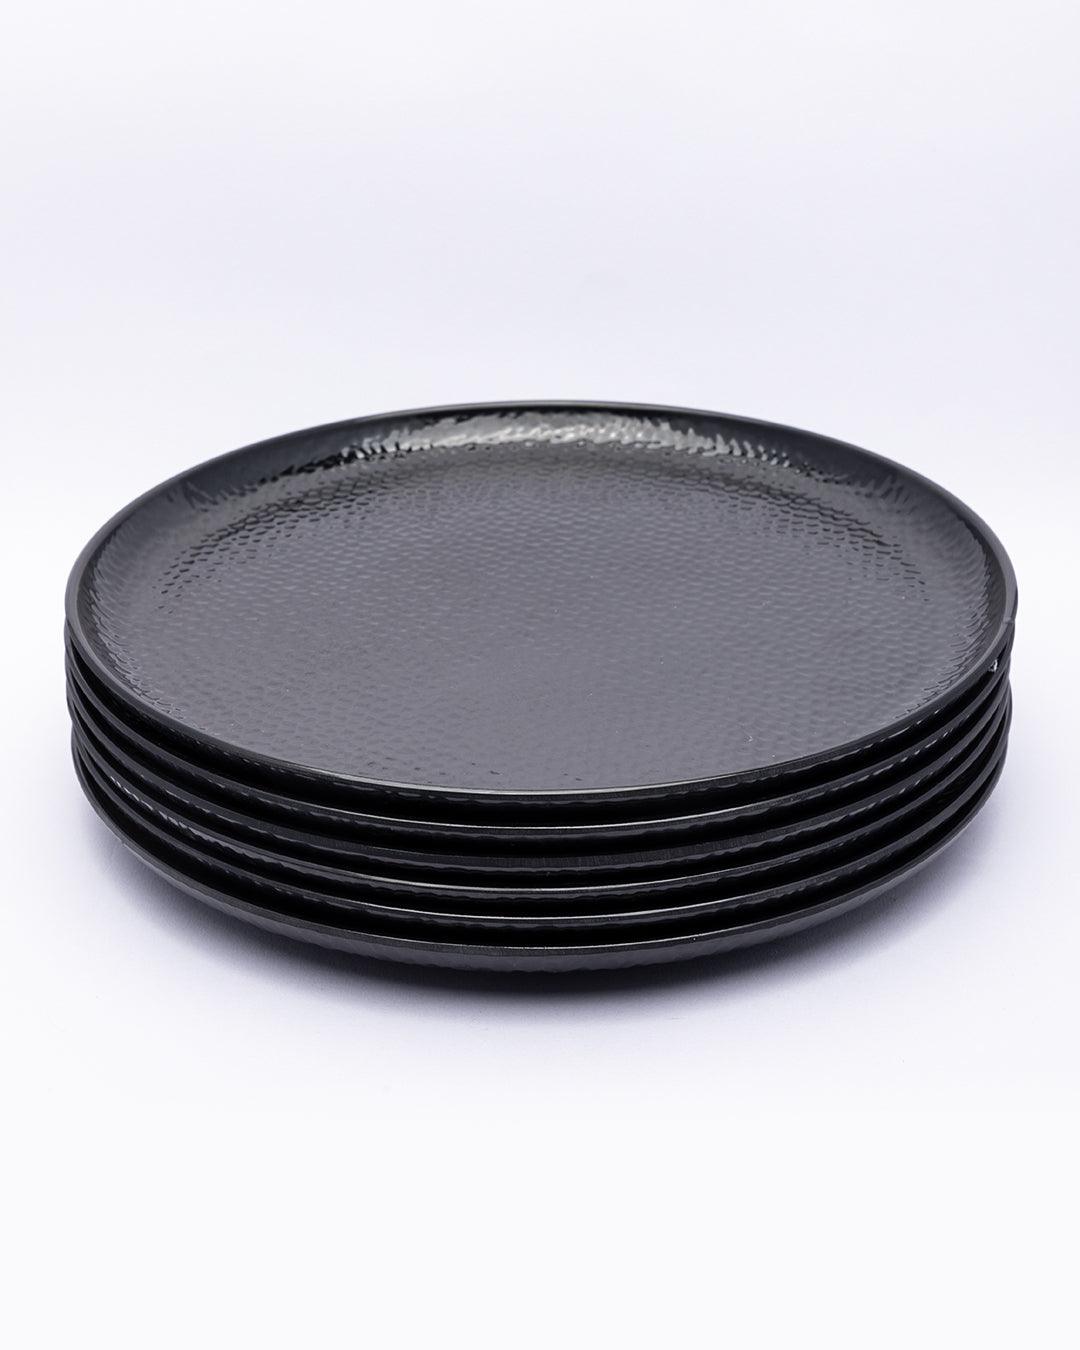 Round Full Plates, Black, Hammered Melamine, Pack Of 6 - MARKET 99